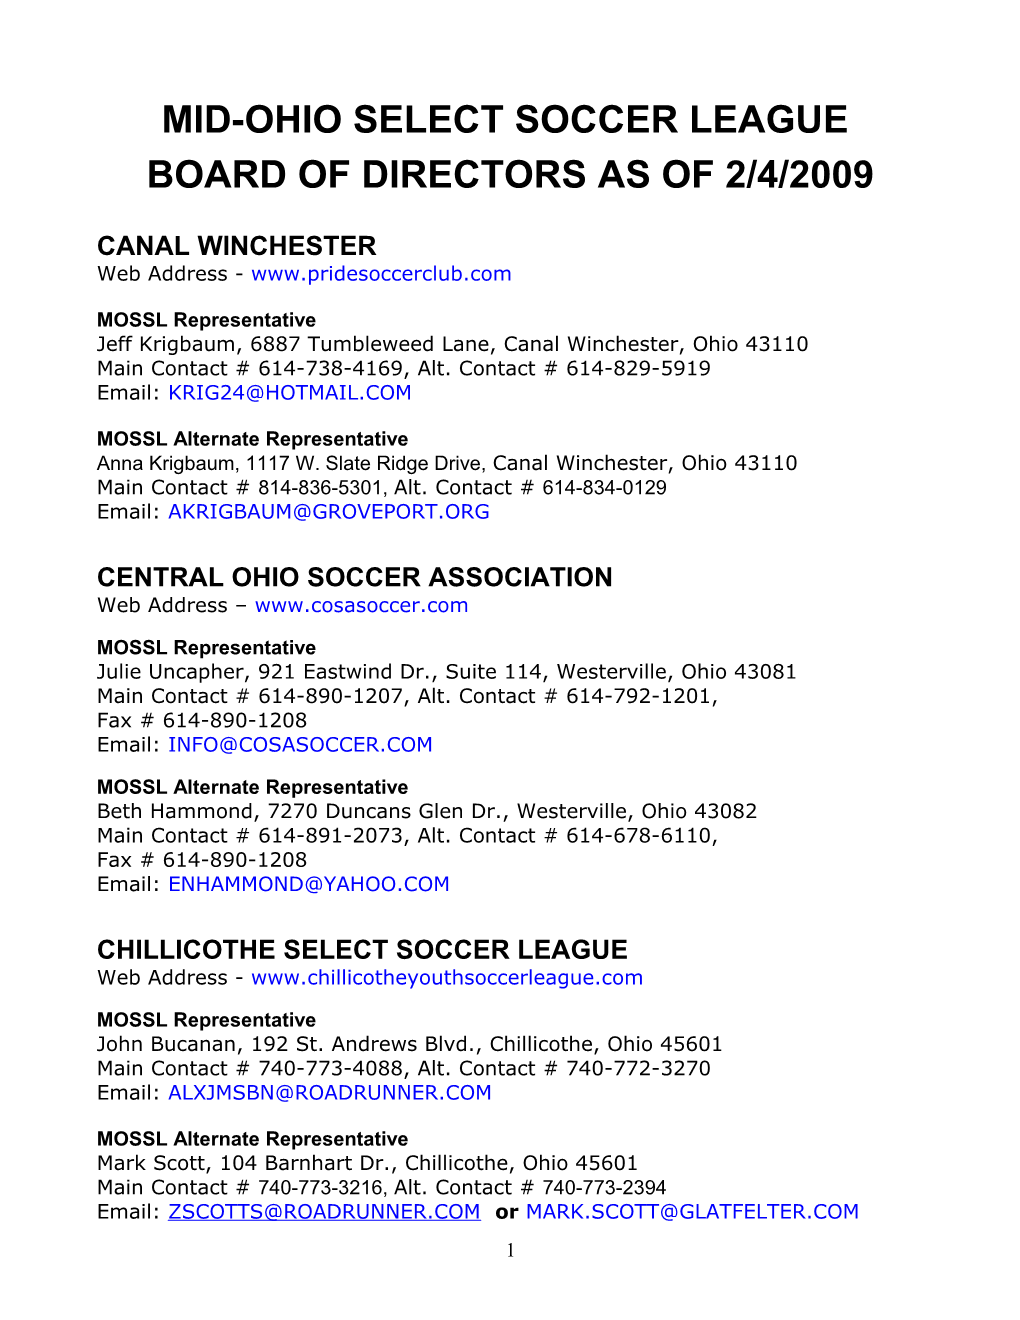 Mid-Ohio Select Soccer League